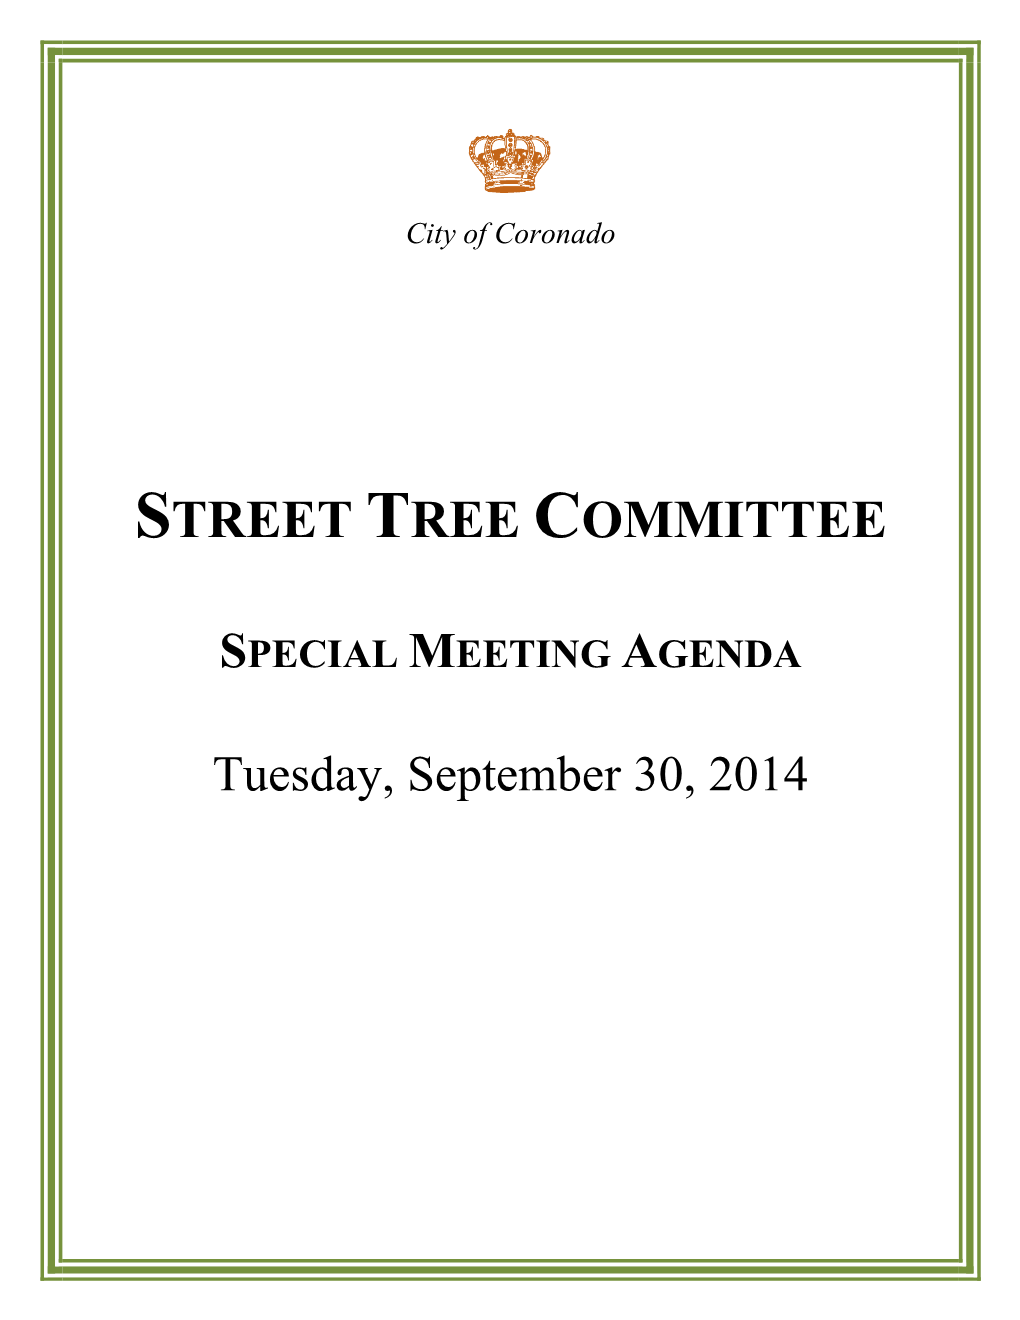 Street Tree Committee